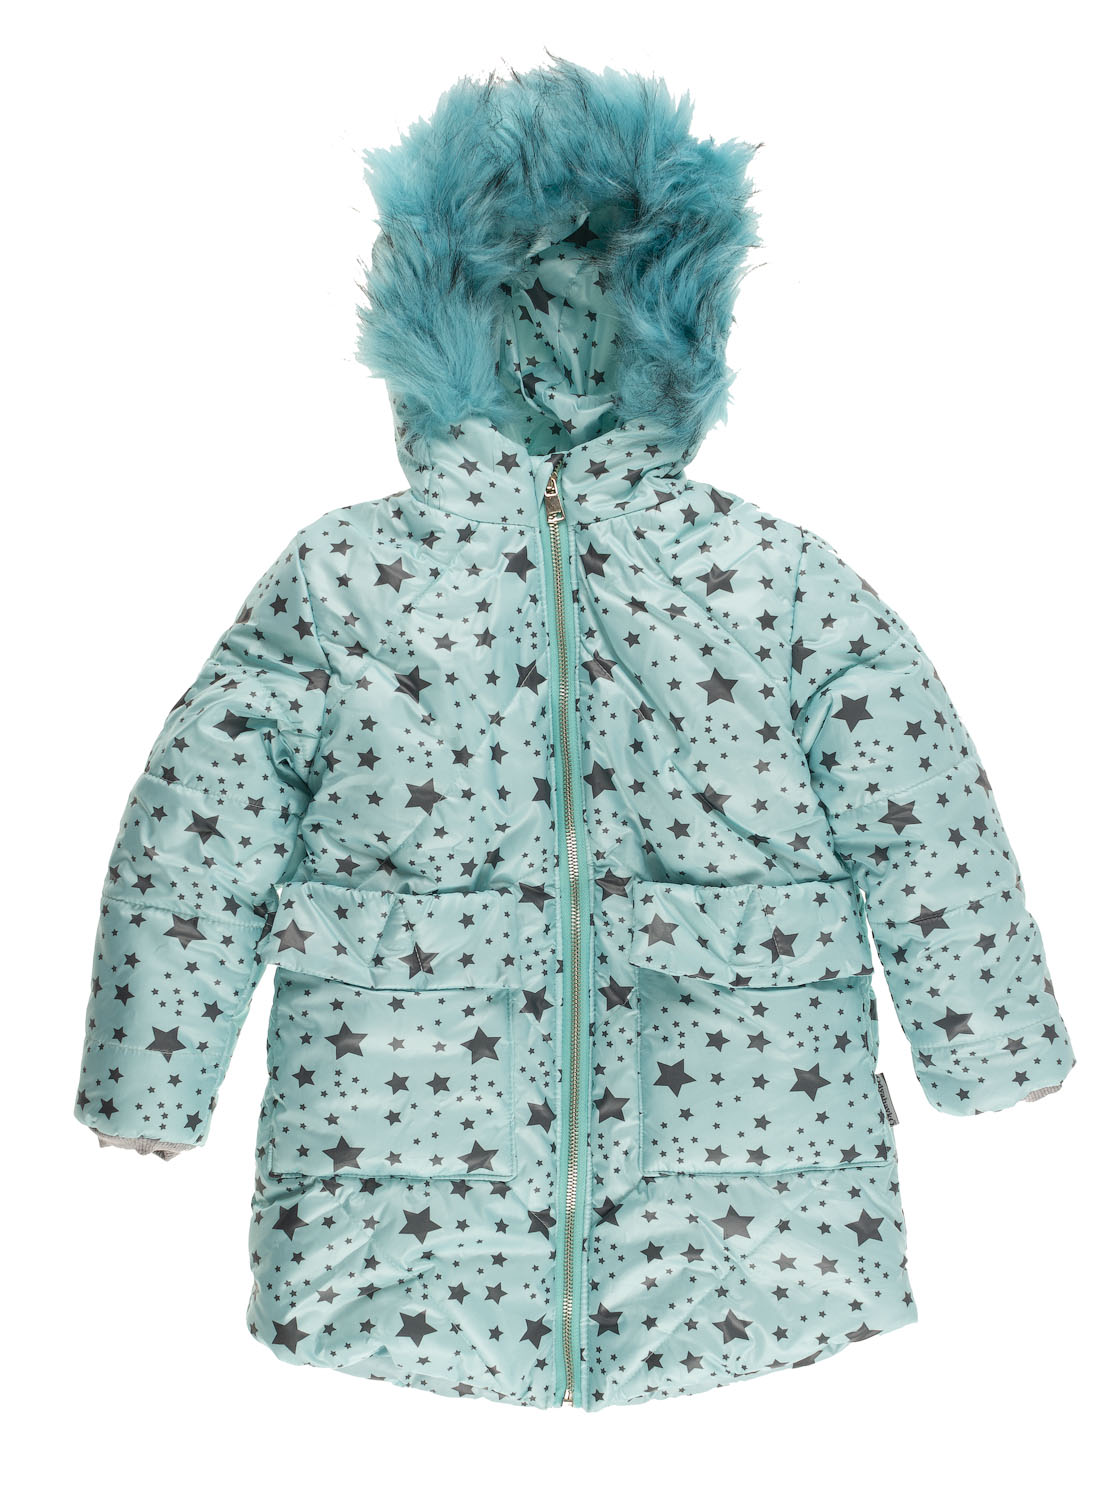 Куртка зимняя для девочки Одягайко Звезды бирюзовая 20175 - ціна